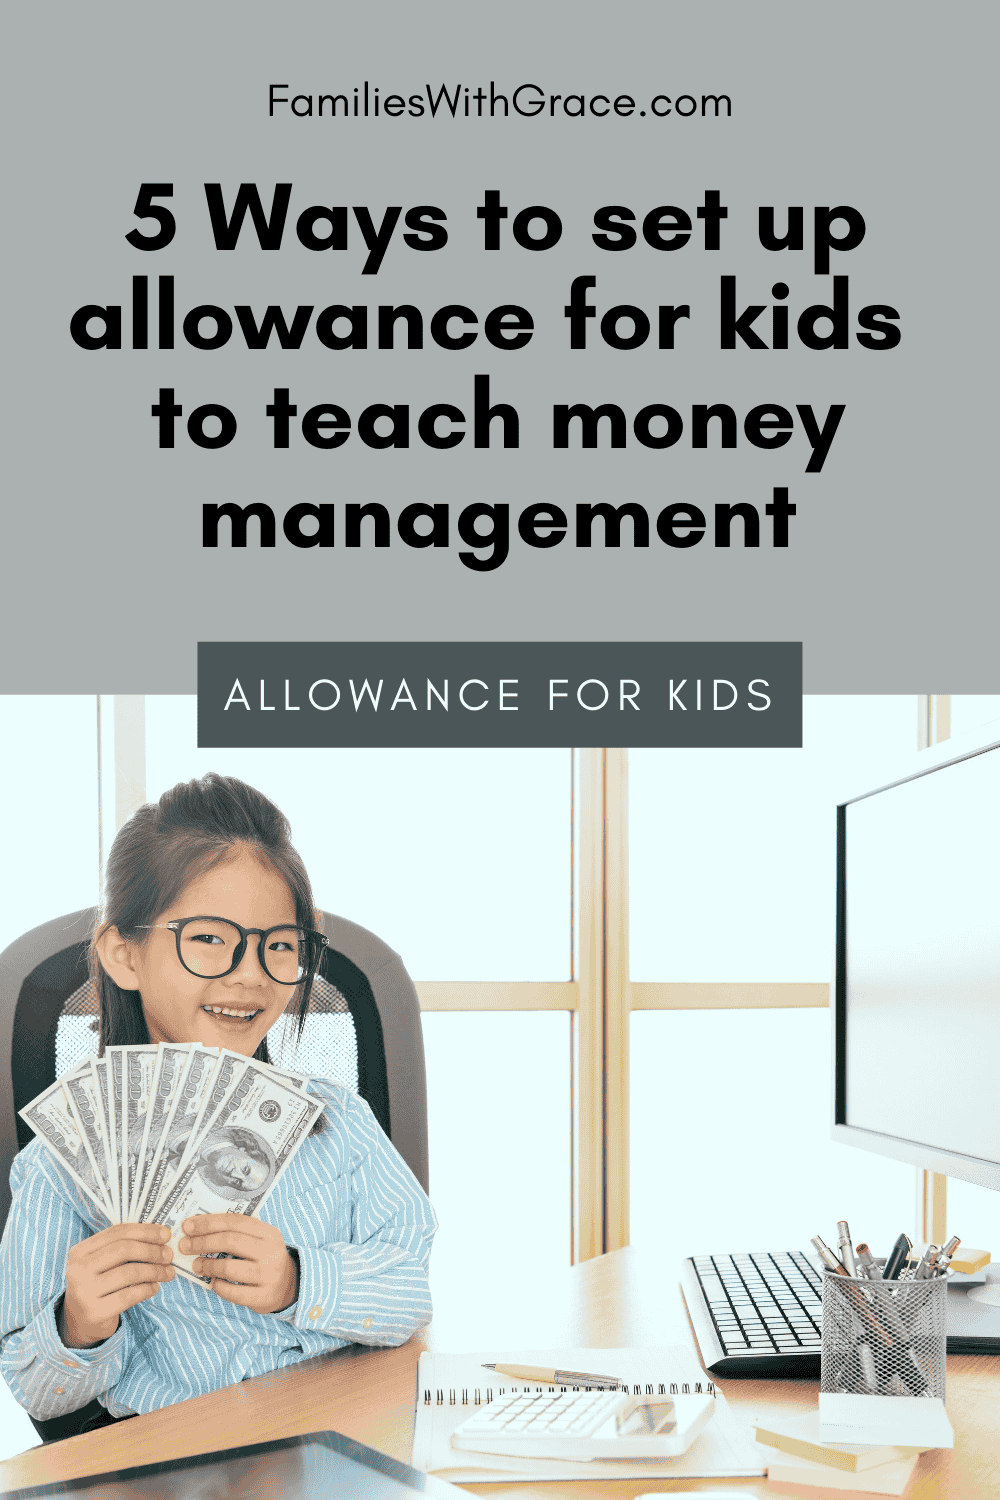 Allowance for kids